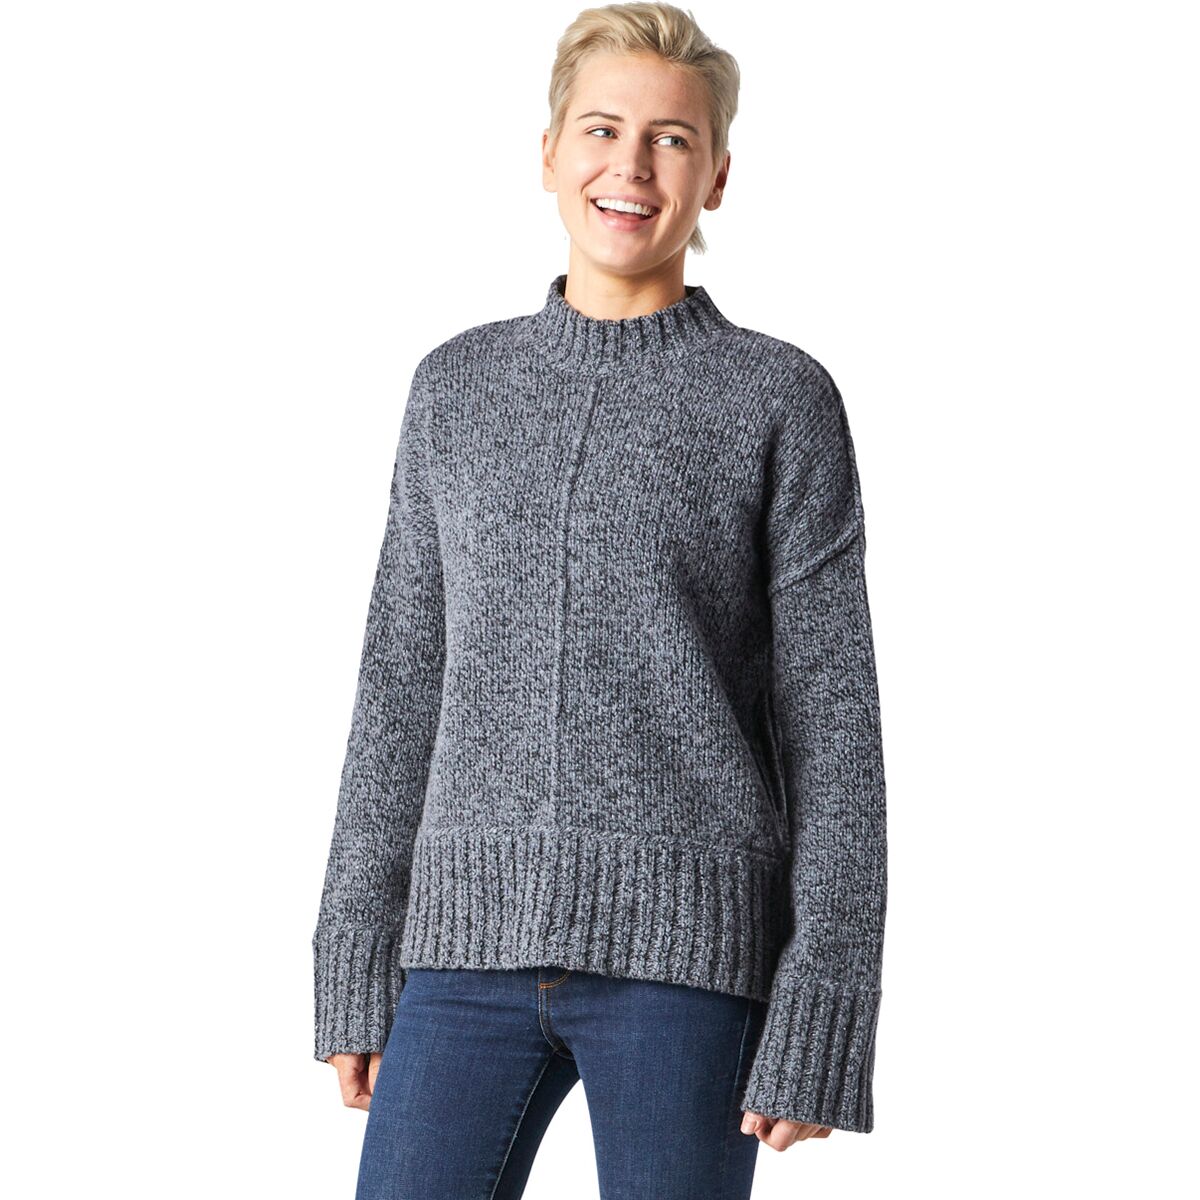 Smartwool Bell Meadow Sweater - Women's